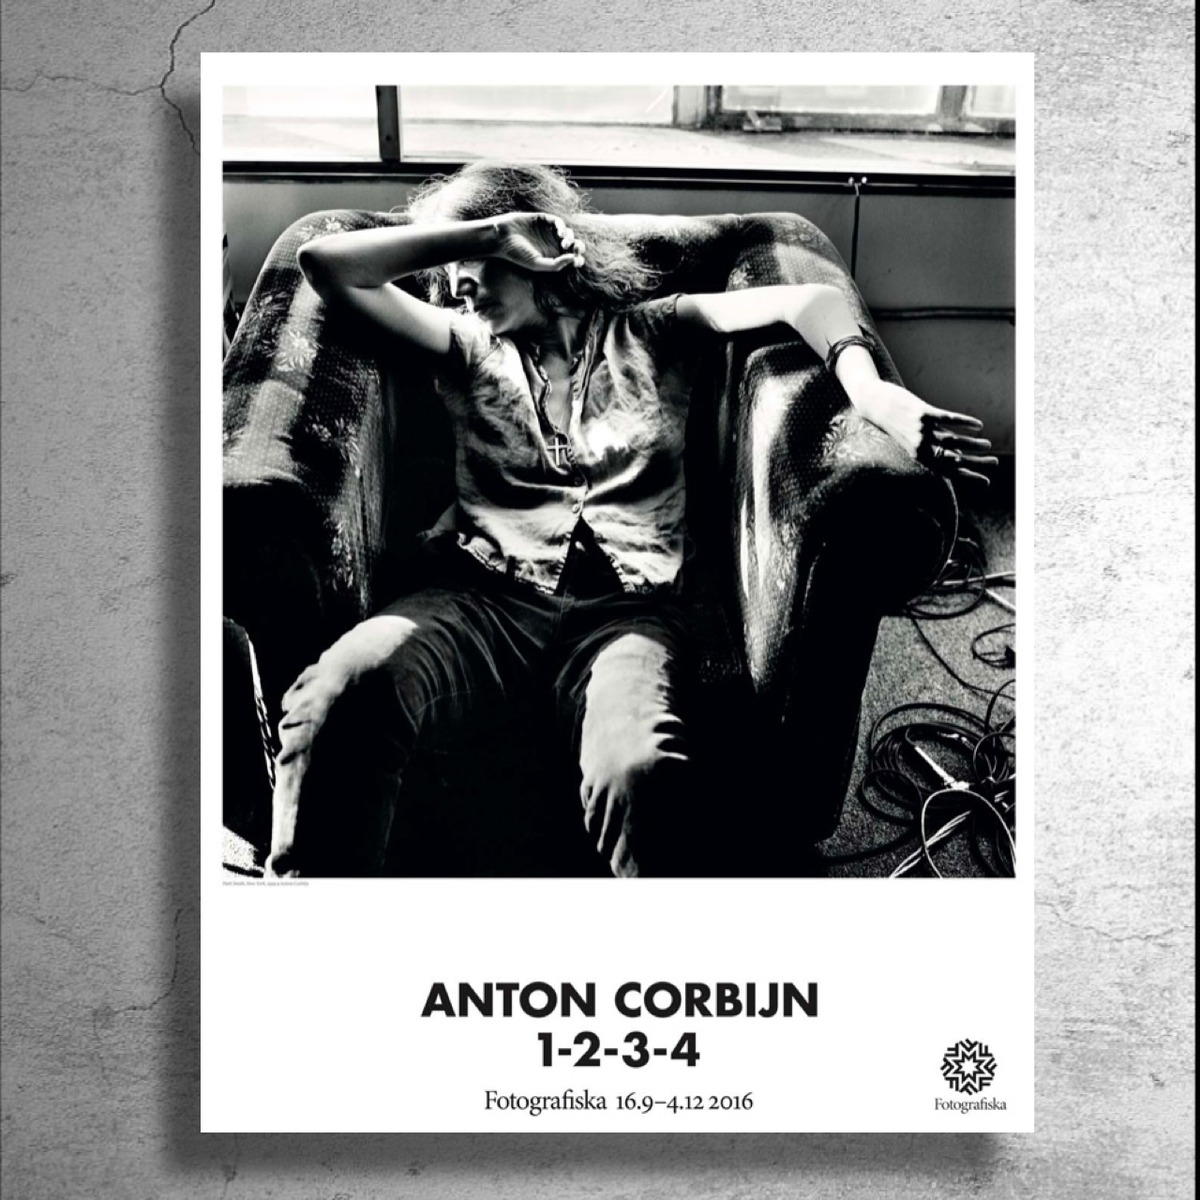 アントン・コービン (Anton Corbijn)撮影 「The Rolling Stones Poster